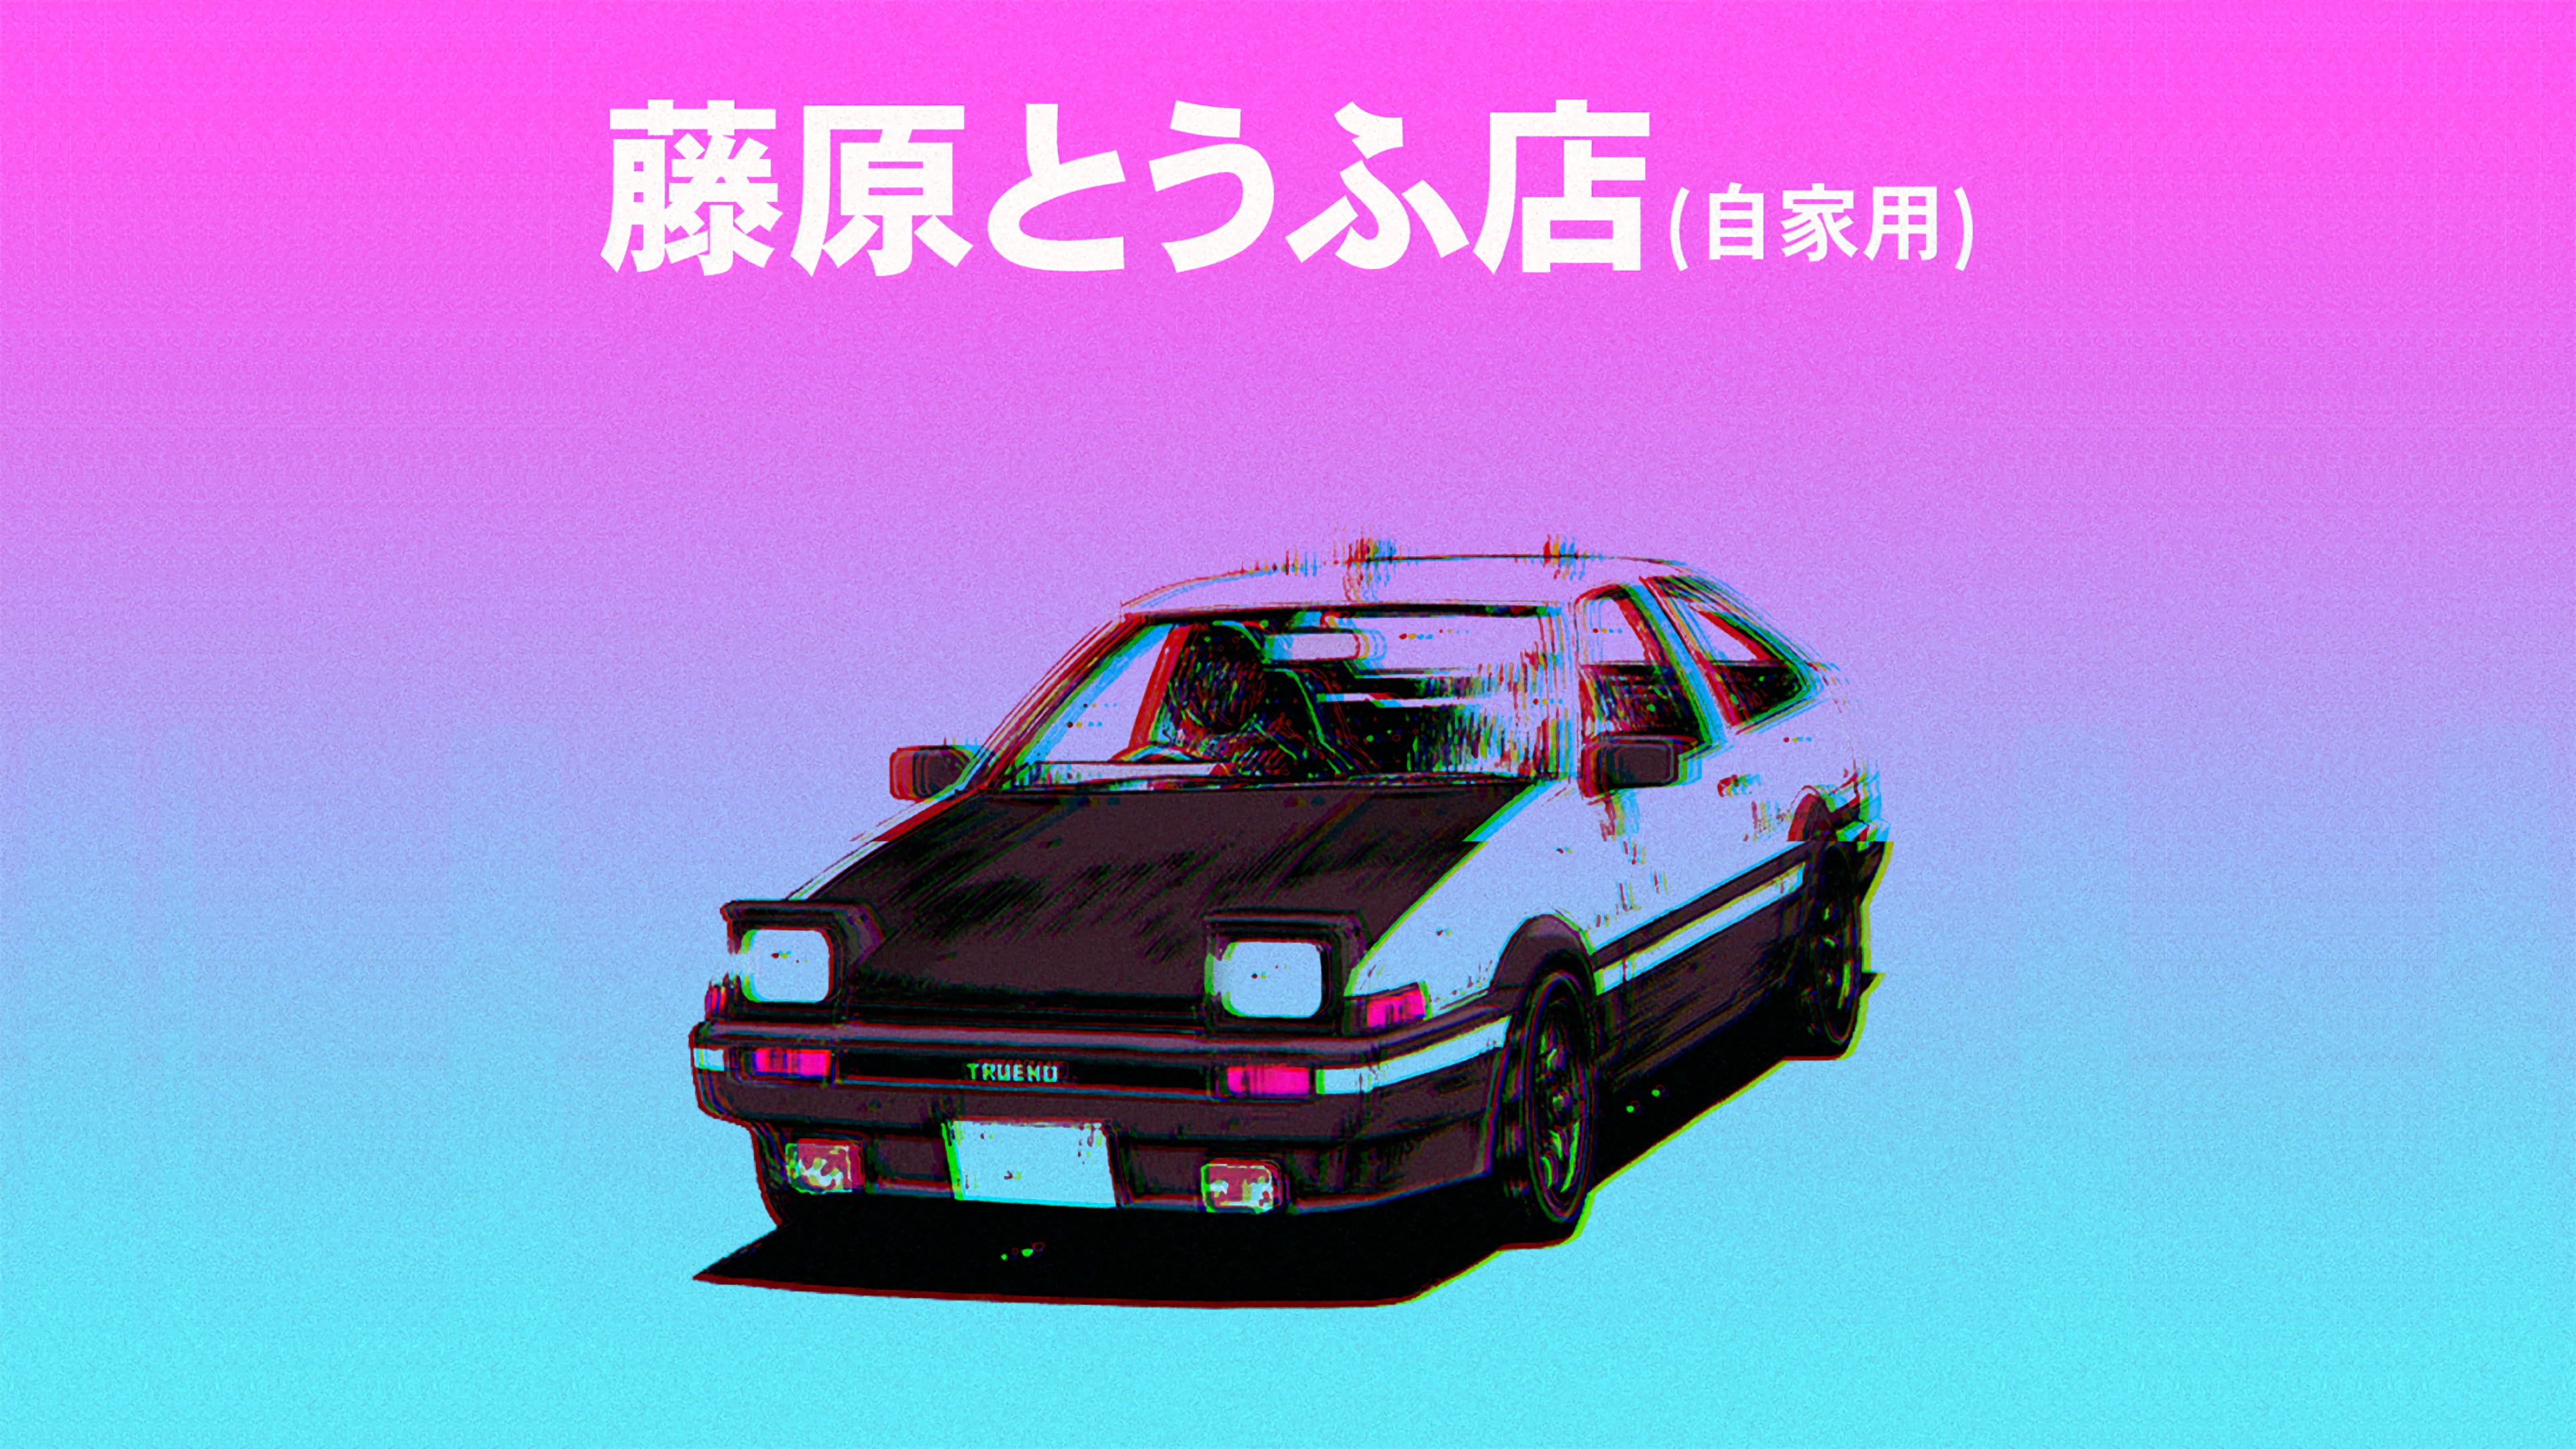 Retrowave Japan Car Wallpaper